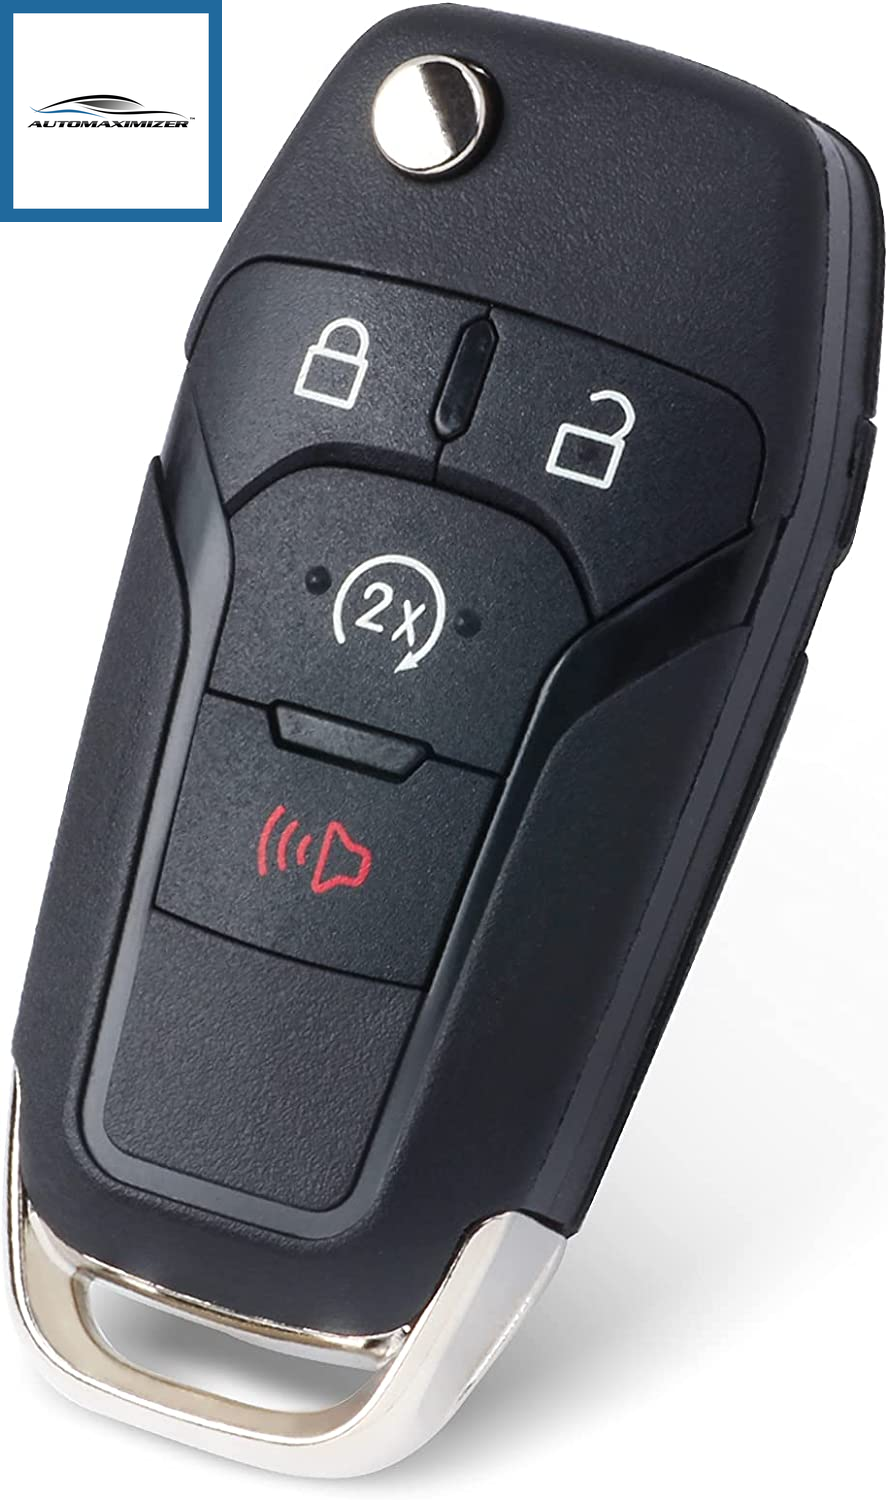 Flip Key Fob Keyless Entry Remote Control for Ford F150/F250/F350/F450 –  AutoMaximizer